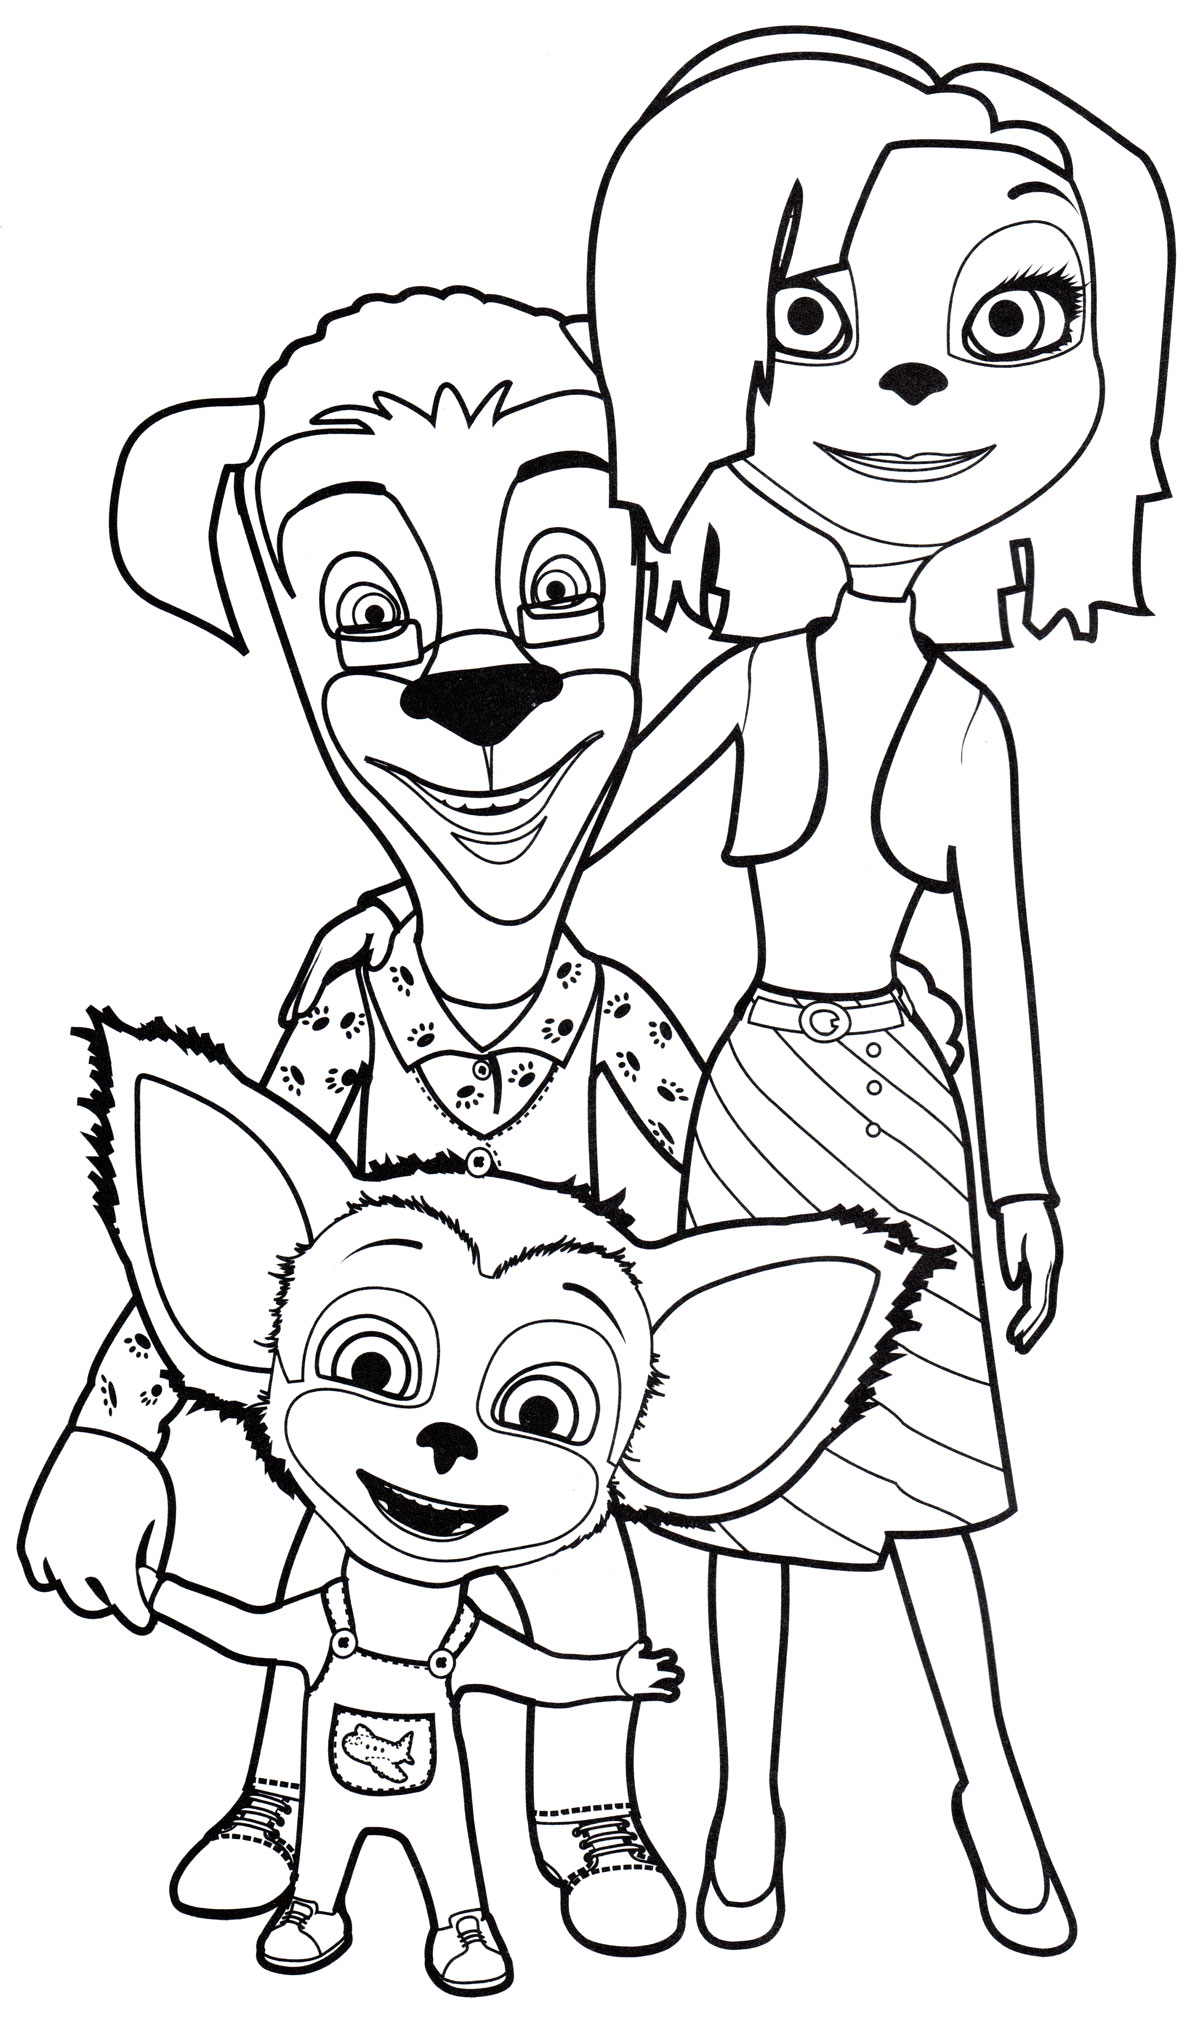 Рисунок семьи барбоскиных